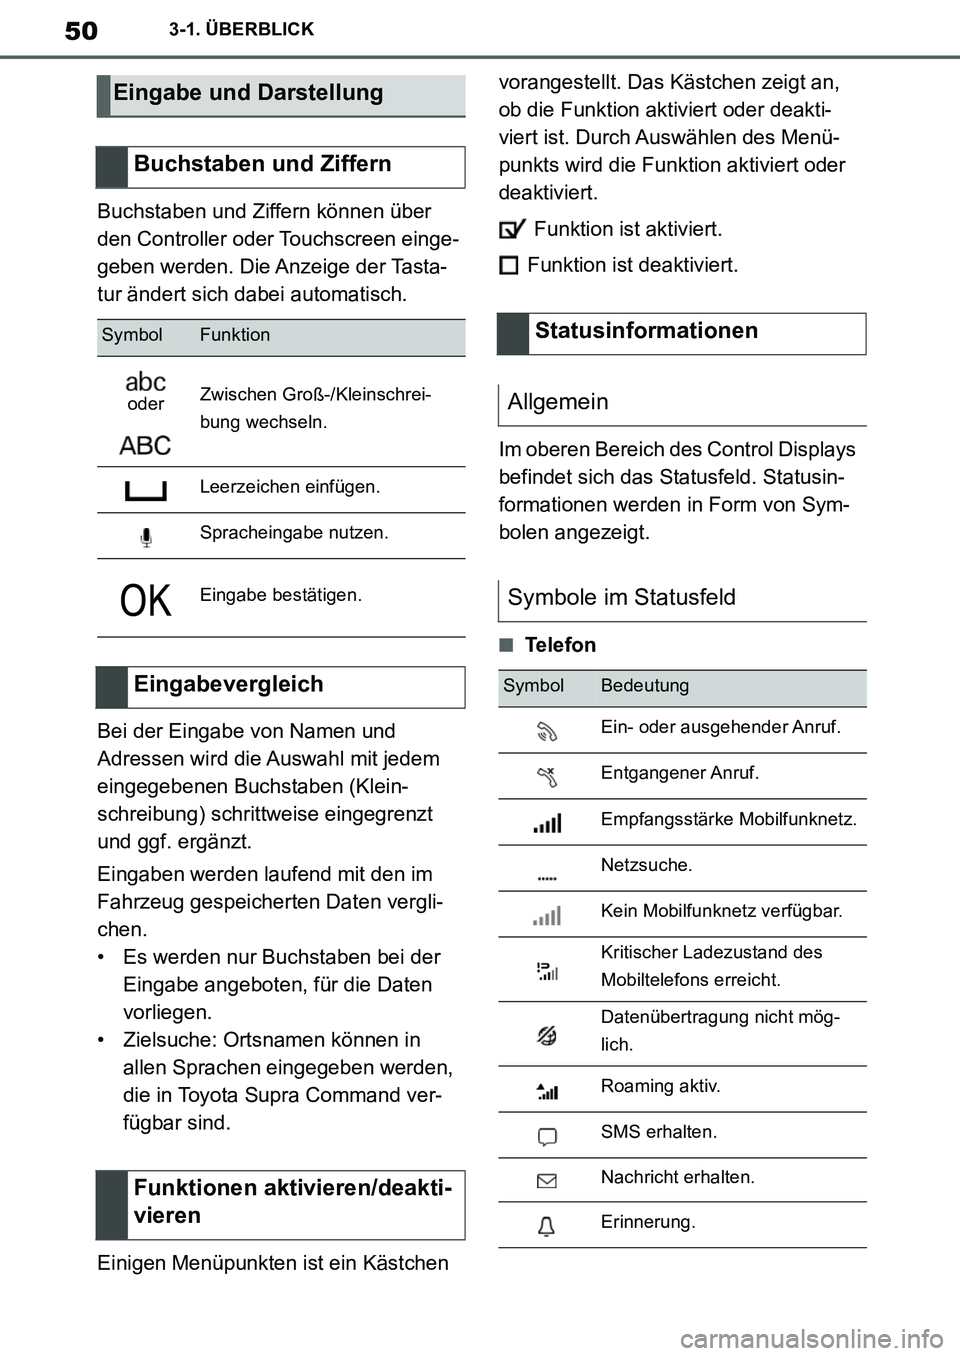 TOYOTA SUPRA 2020  Betriebsanleitungen (in German) 50
Supra Owners Manual_EM
3-1. ÜBERBLICK
Buchstaben und Ziffern können über 
den Controller oder Touchscreen einge-
geben werden. Die Anzeige der Tasta-
tur ändert sich dabei automatisch.
Bei der